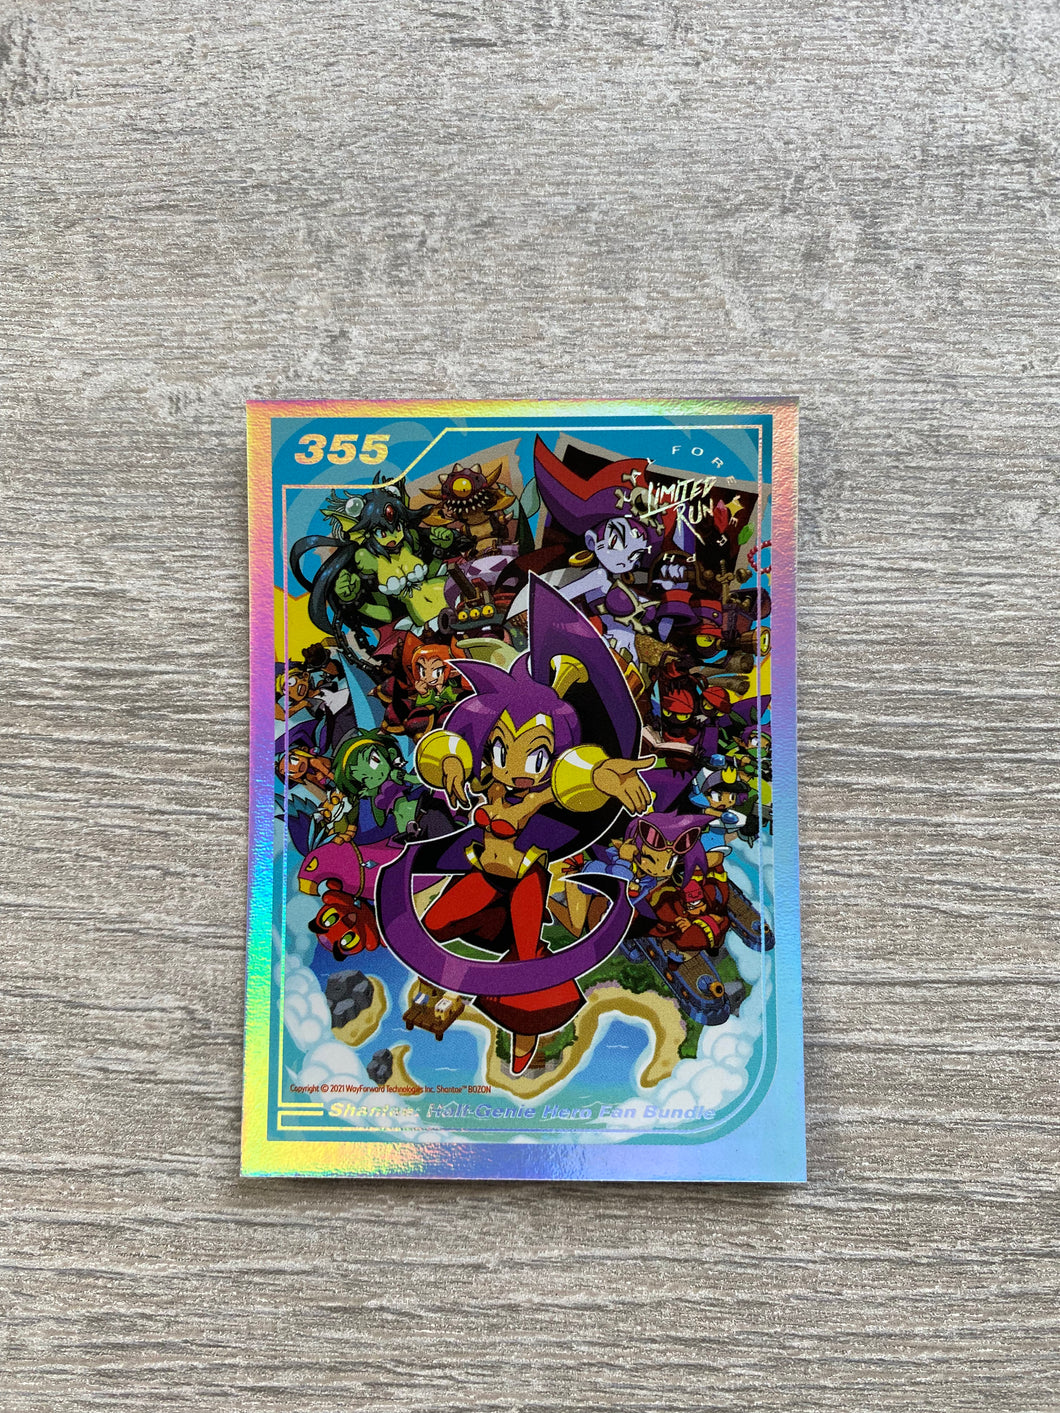 Gen2 #355 Silver Shantae Half-genie Hero Fan bundle Limited run games Trading card